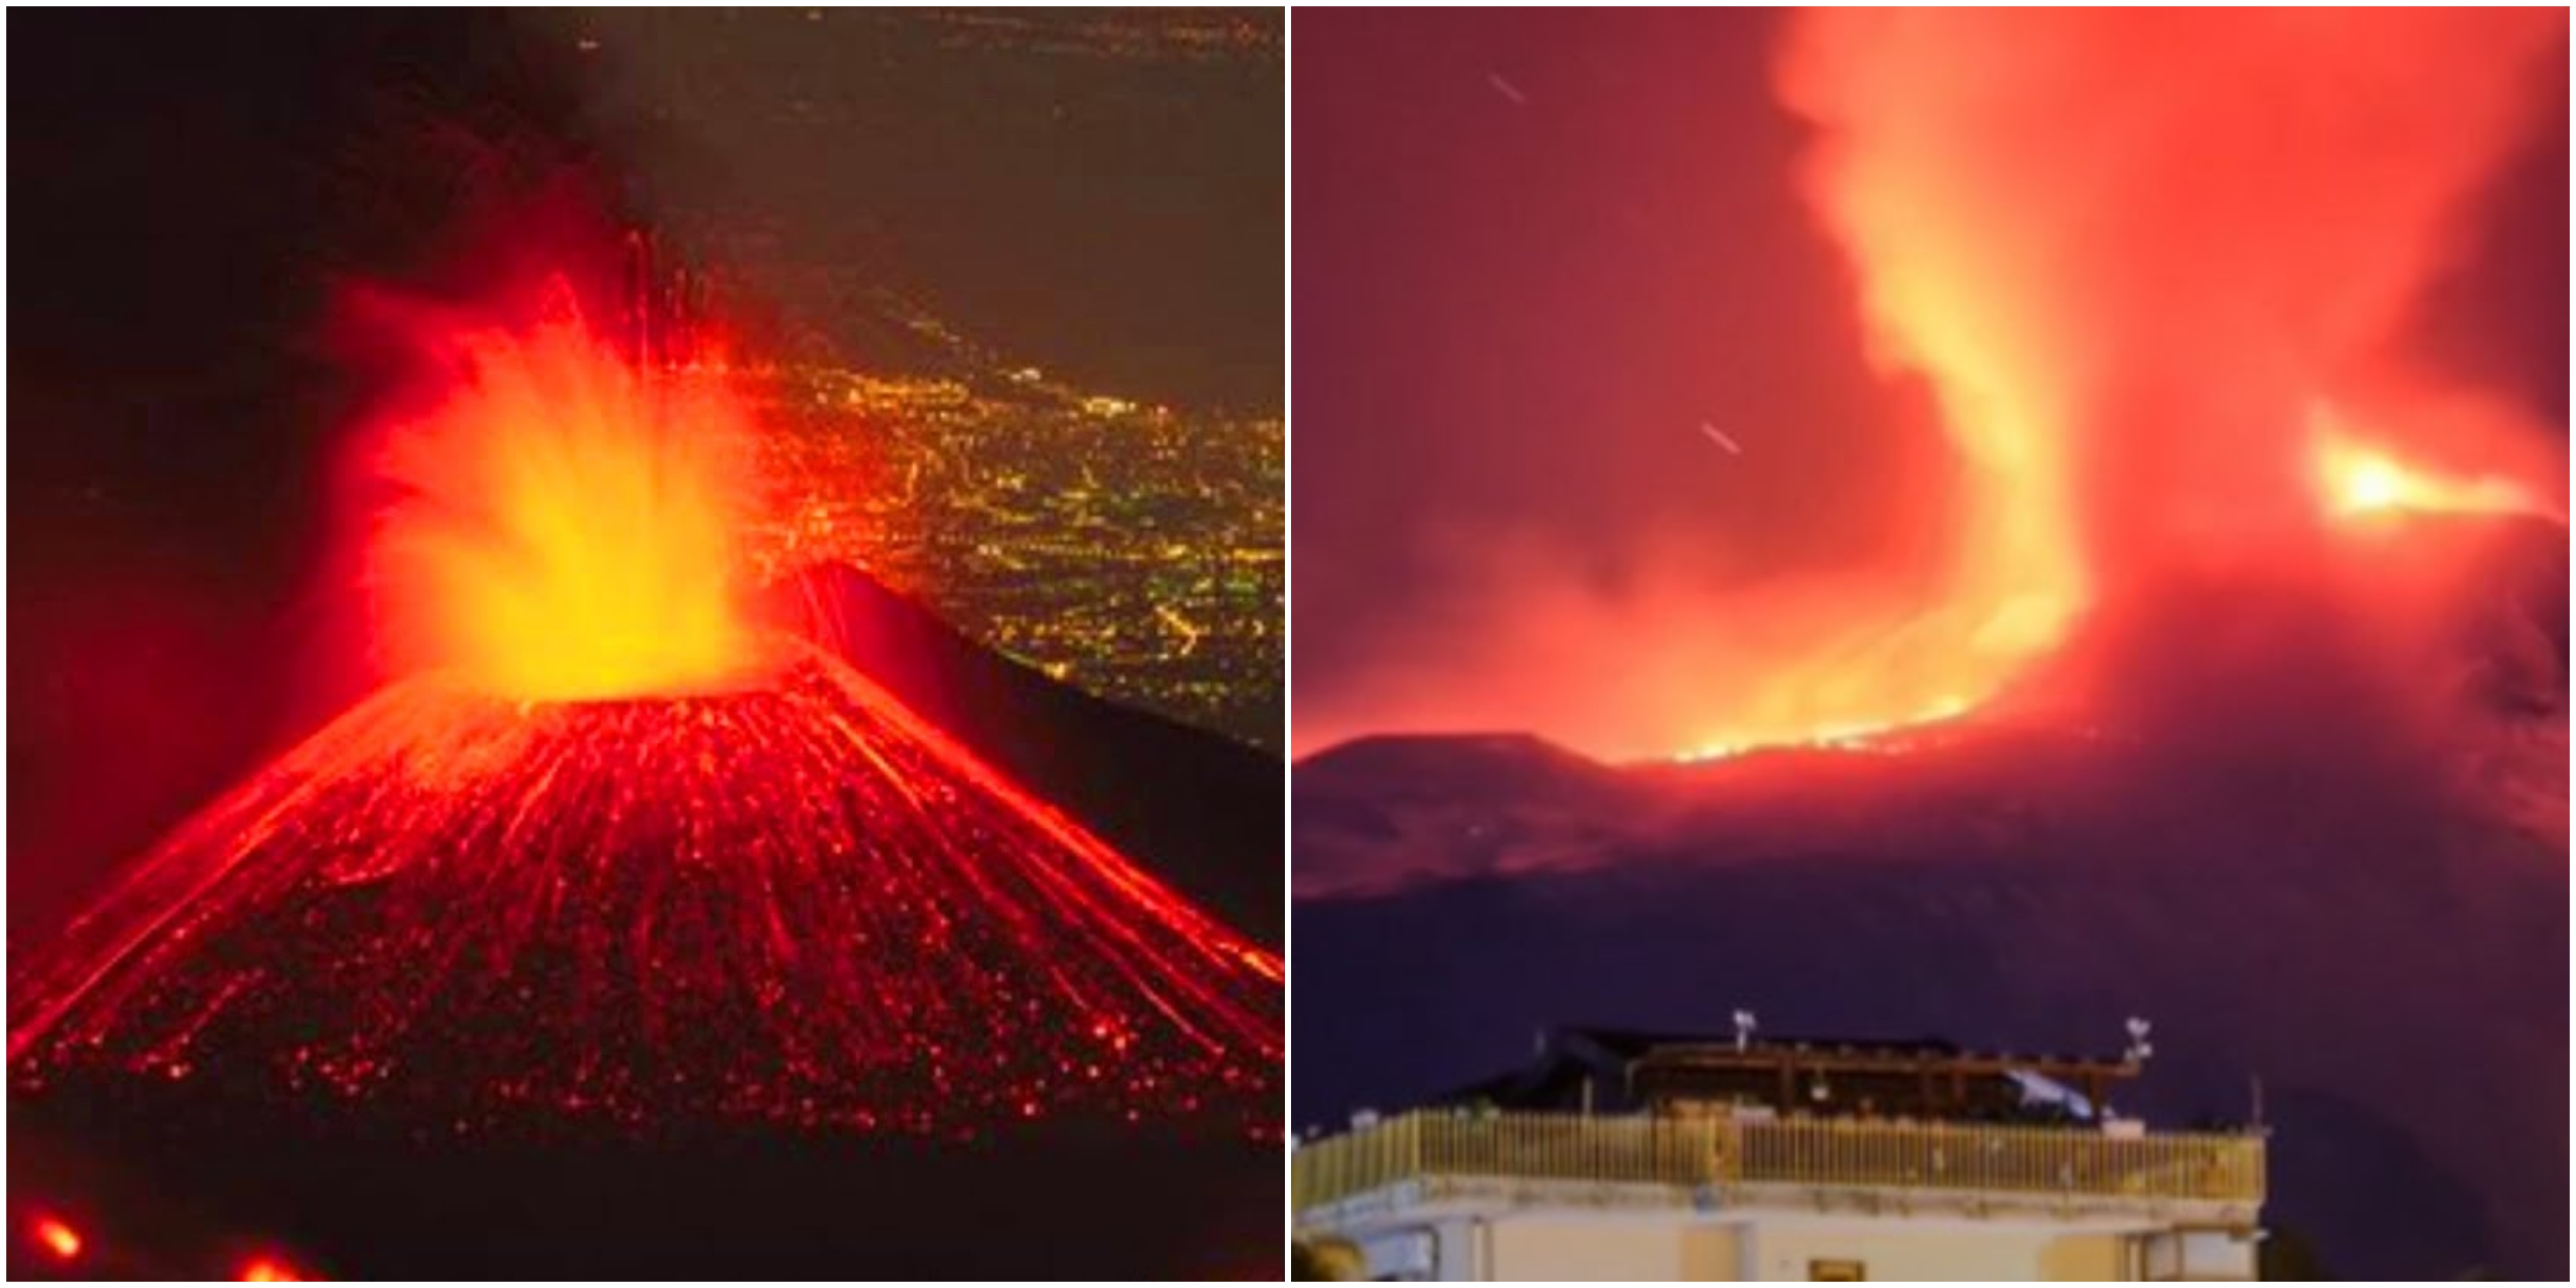 Ξύπνησε το ηφαίστειο Αίτνα και εκτοξεύει σιντριβάνια λάβας και στάχτης ύψους 100 μέτρων